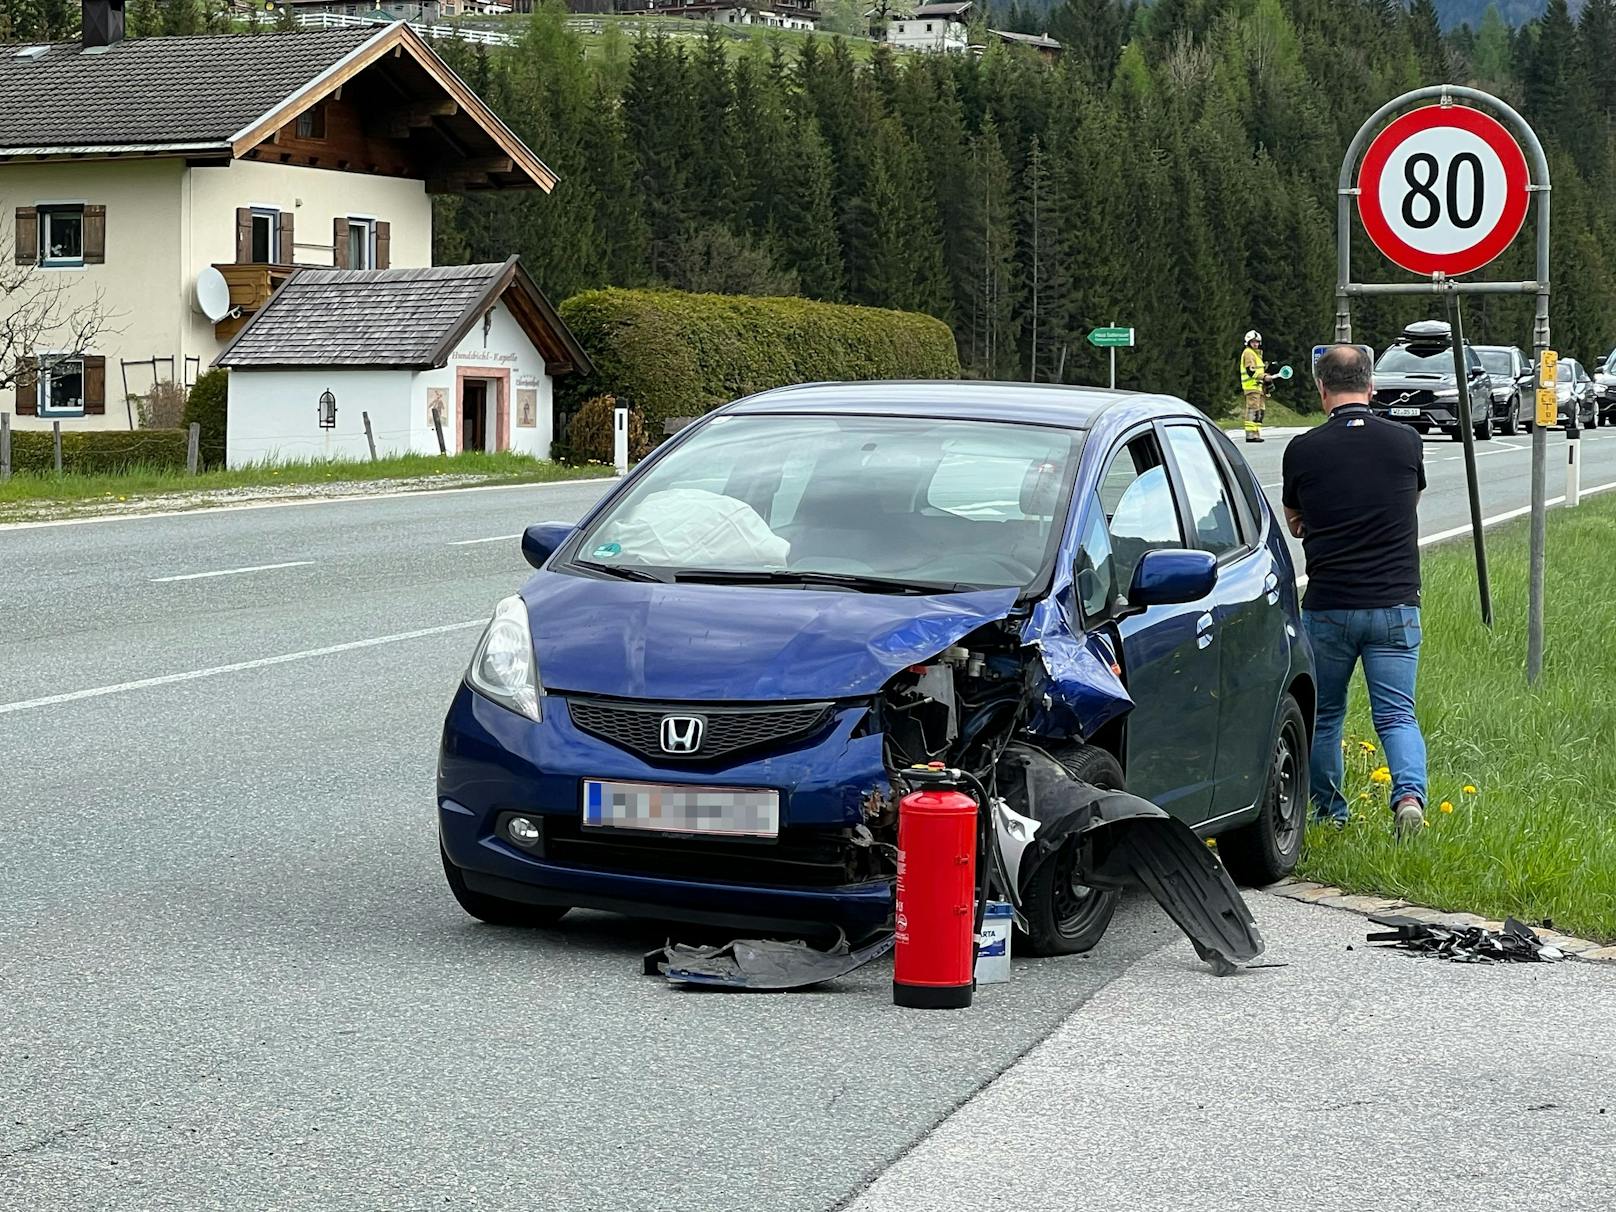 Der aus Richtung St. Johann kommende 42-Jährige konnte eine Kollision nicht mehr verhindern und prallte mit dem vorderen linken Fahrzeugeck gegen das hintere linke Heck des Pkw des 63-Jährigen. Dadurch wurden beide Fahrzeuge stark beschädigt.